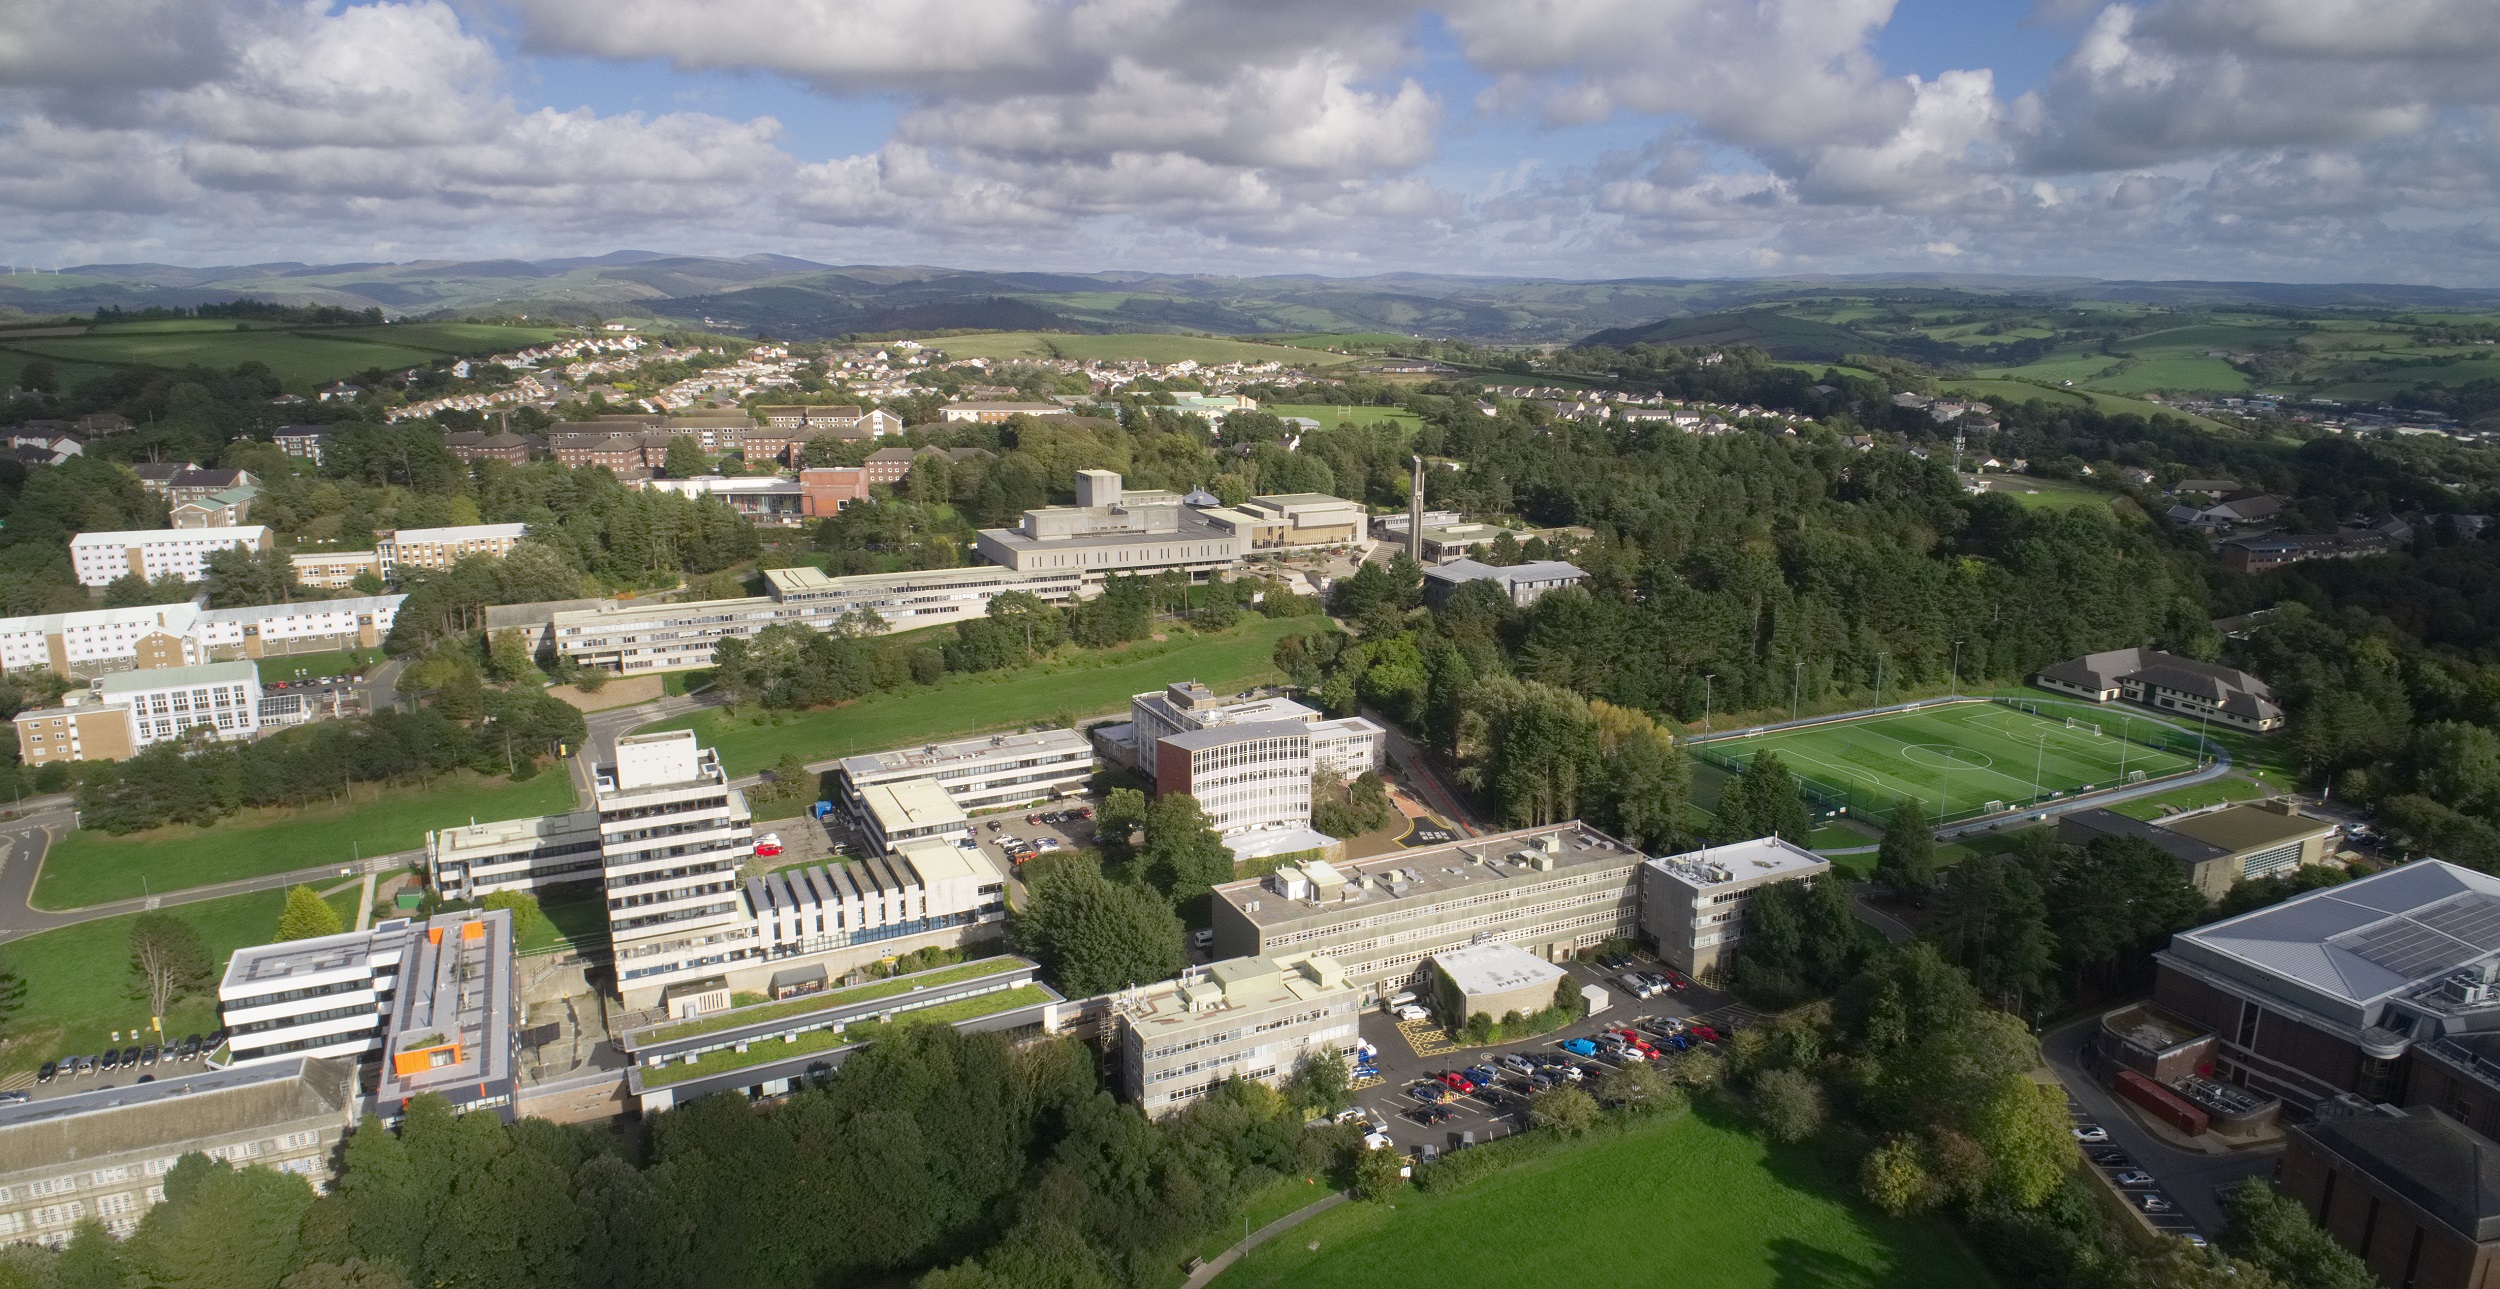 Prifysgol Aberystwyth